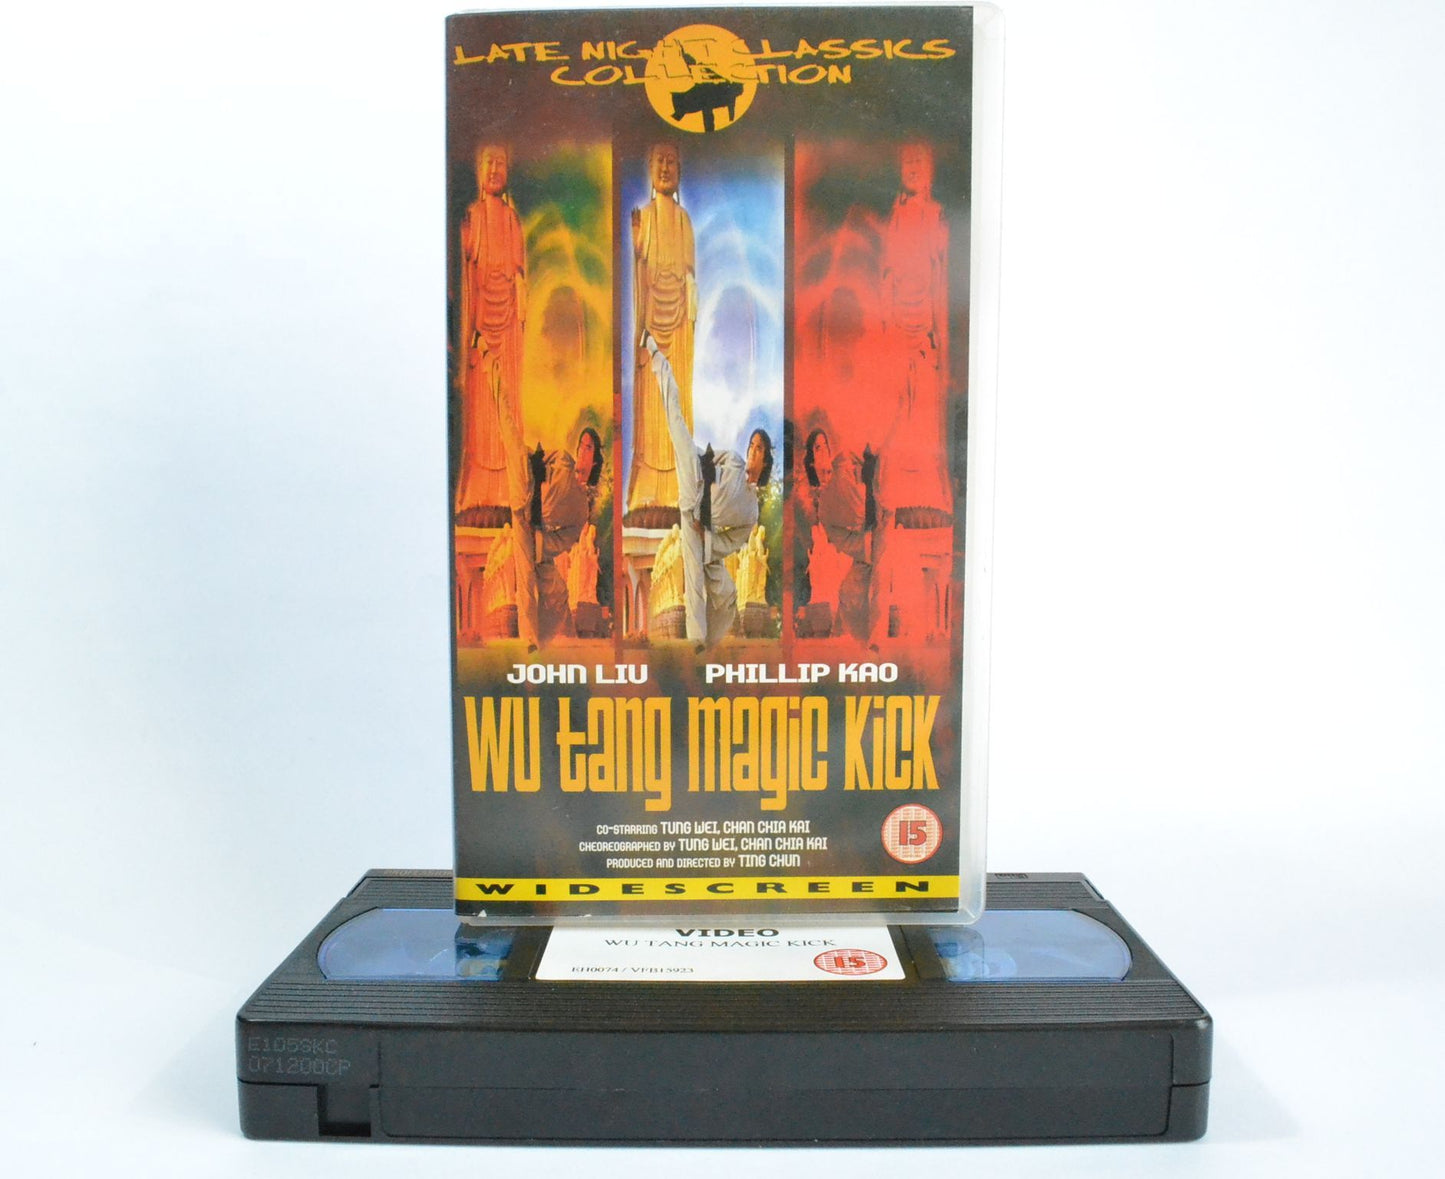 Wu-Tang Magic Kick: ‘Northern Leg’ John Liu - P.Kao [Widescreen Kung-Fu] VHS-